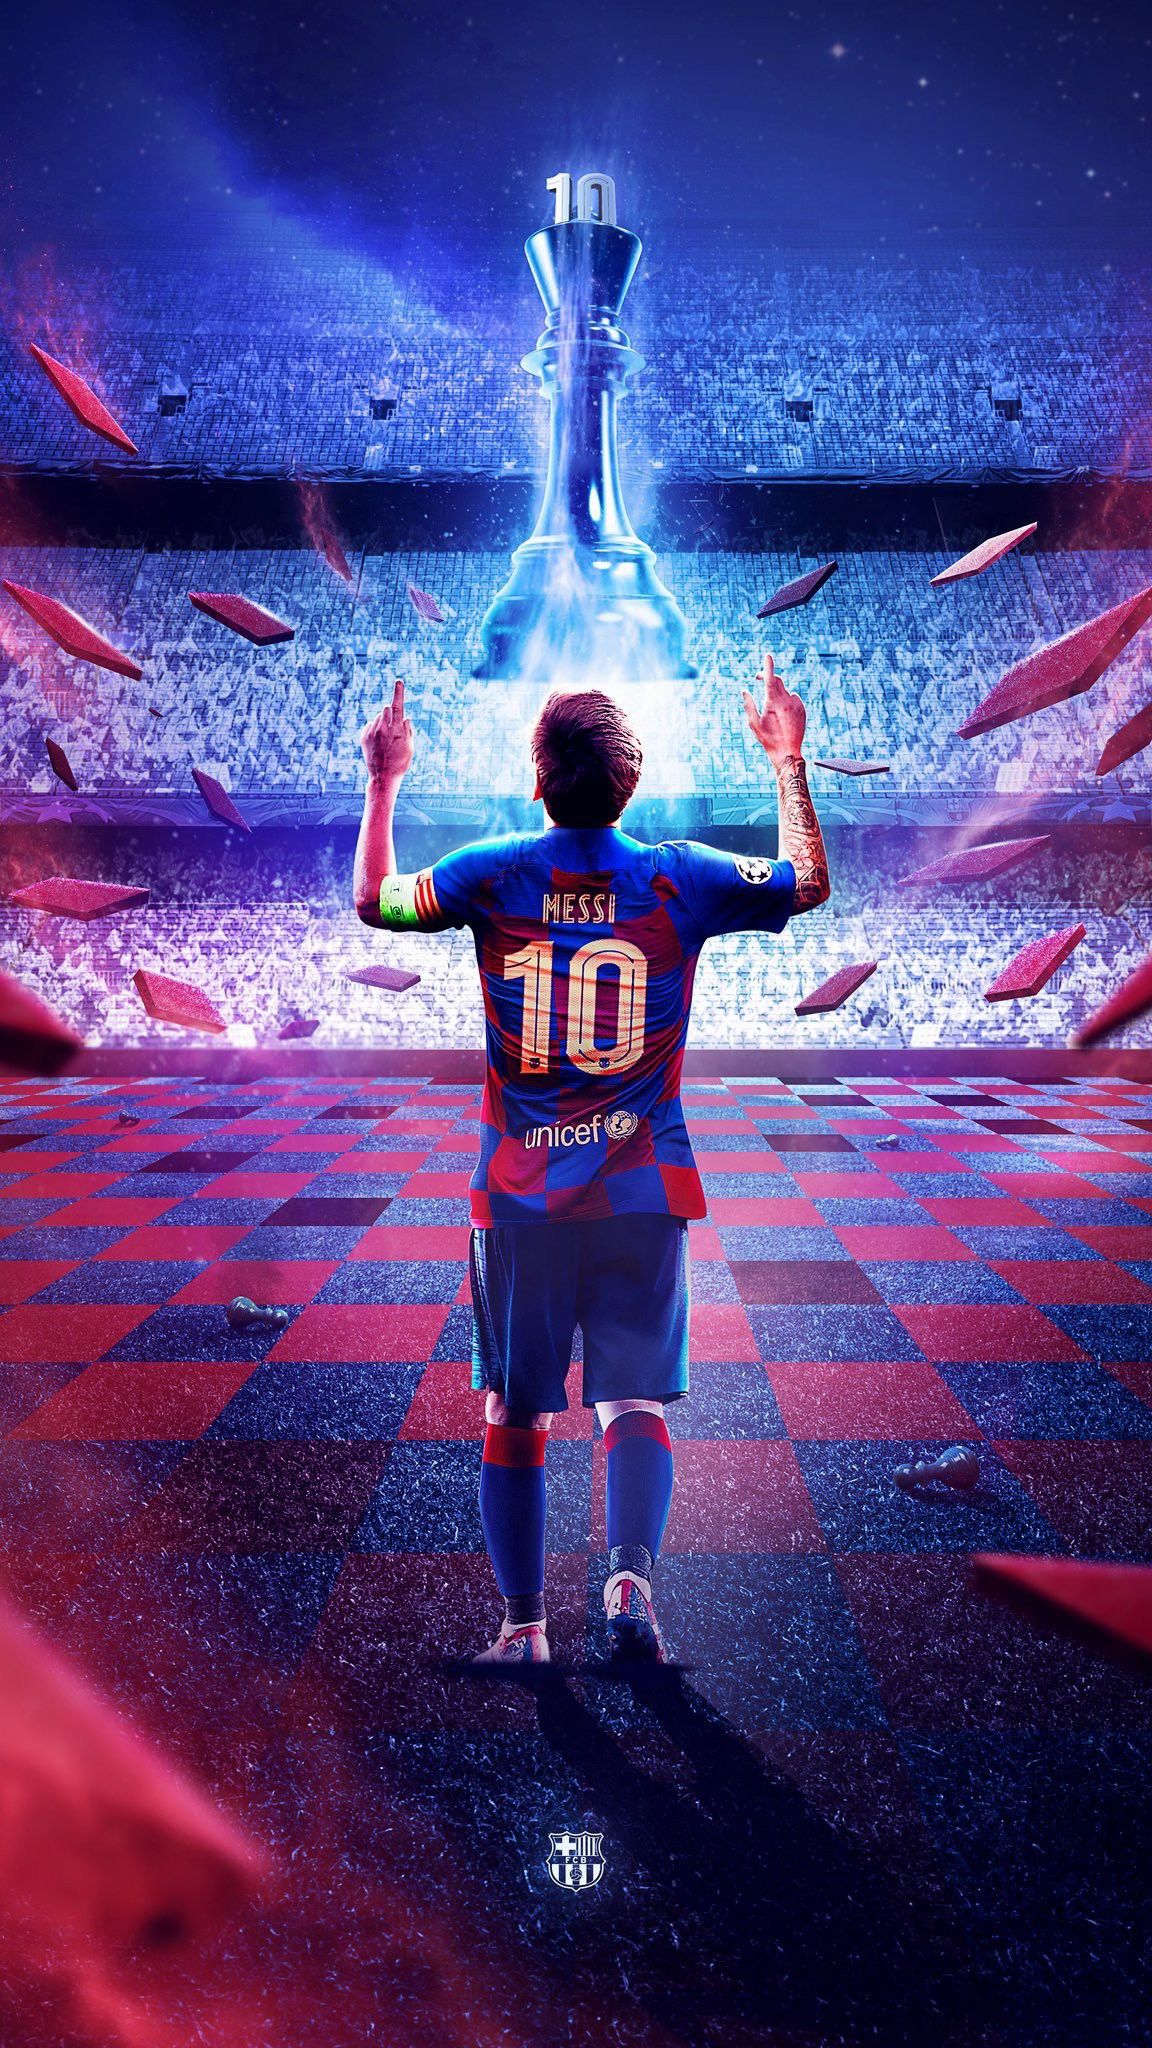 Messi: Lionel Messi, tài năng bóng đá thế giới, đã mang đến những khoảnh khắc căng thẳng và kịch tính trên sân cỏ. Xem ngay hình ảnh của anh ta và cảm nhận sự uyển chuyển và khả năng sút bóng tuyệt vời của Messi.